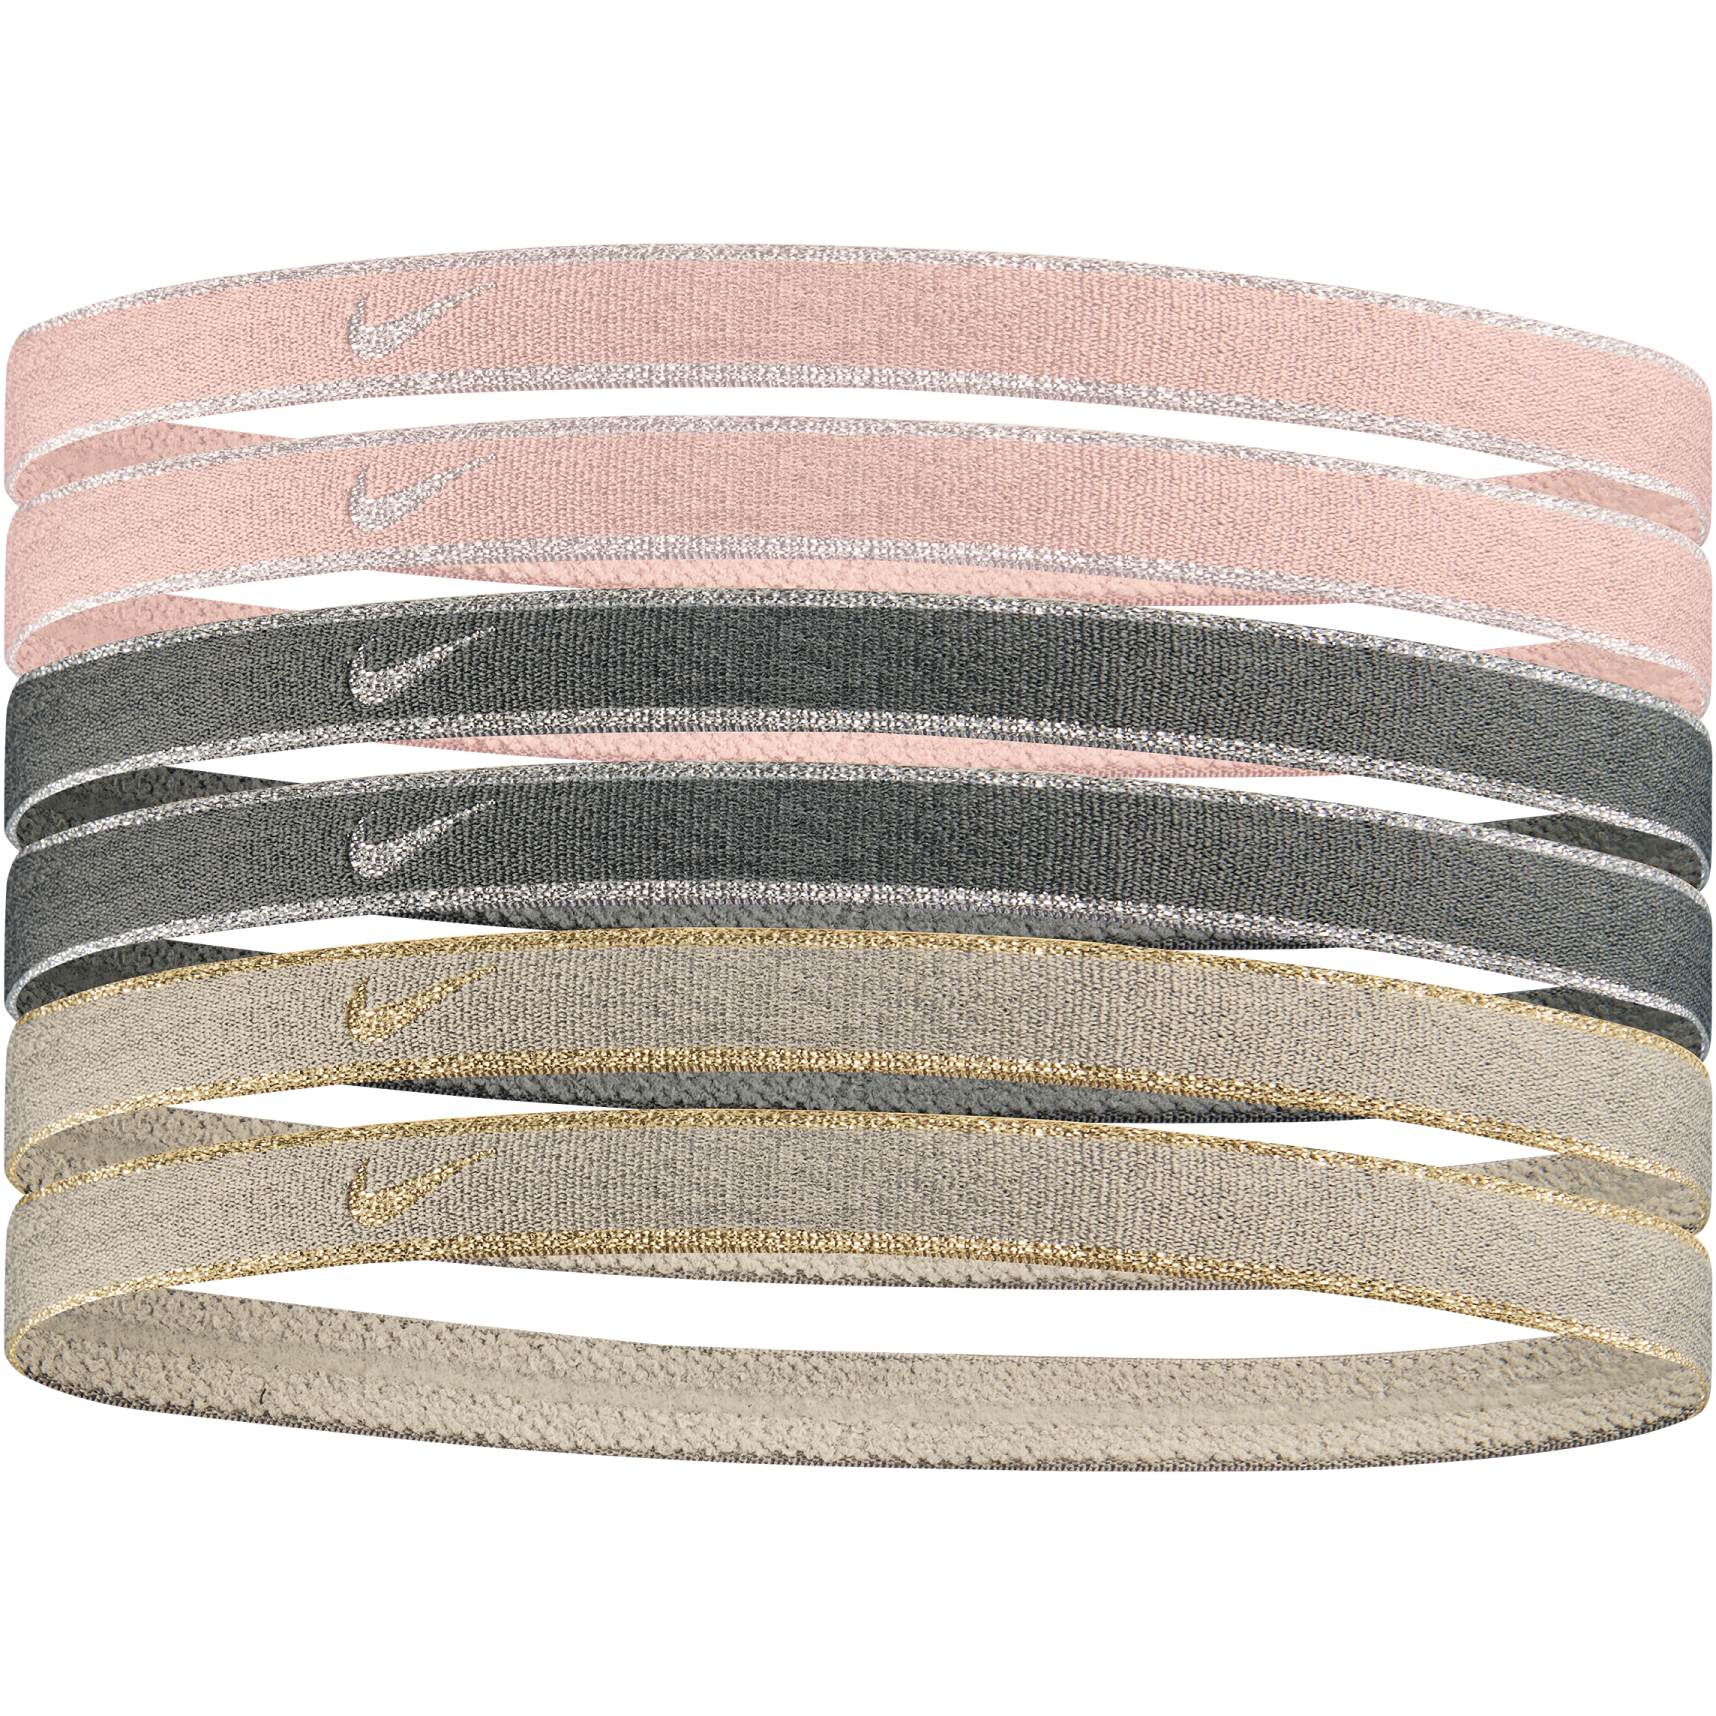 Productfoto van Nike Swoosh Sport Hoofdbanden Metallic (Set van 6) - pink oxford/black/rattan 648